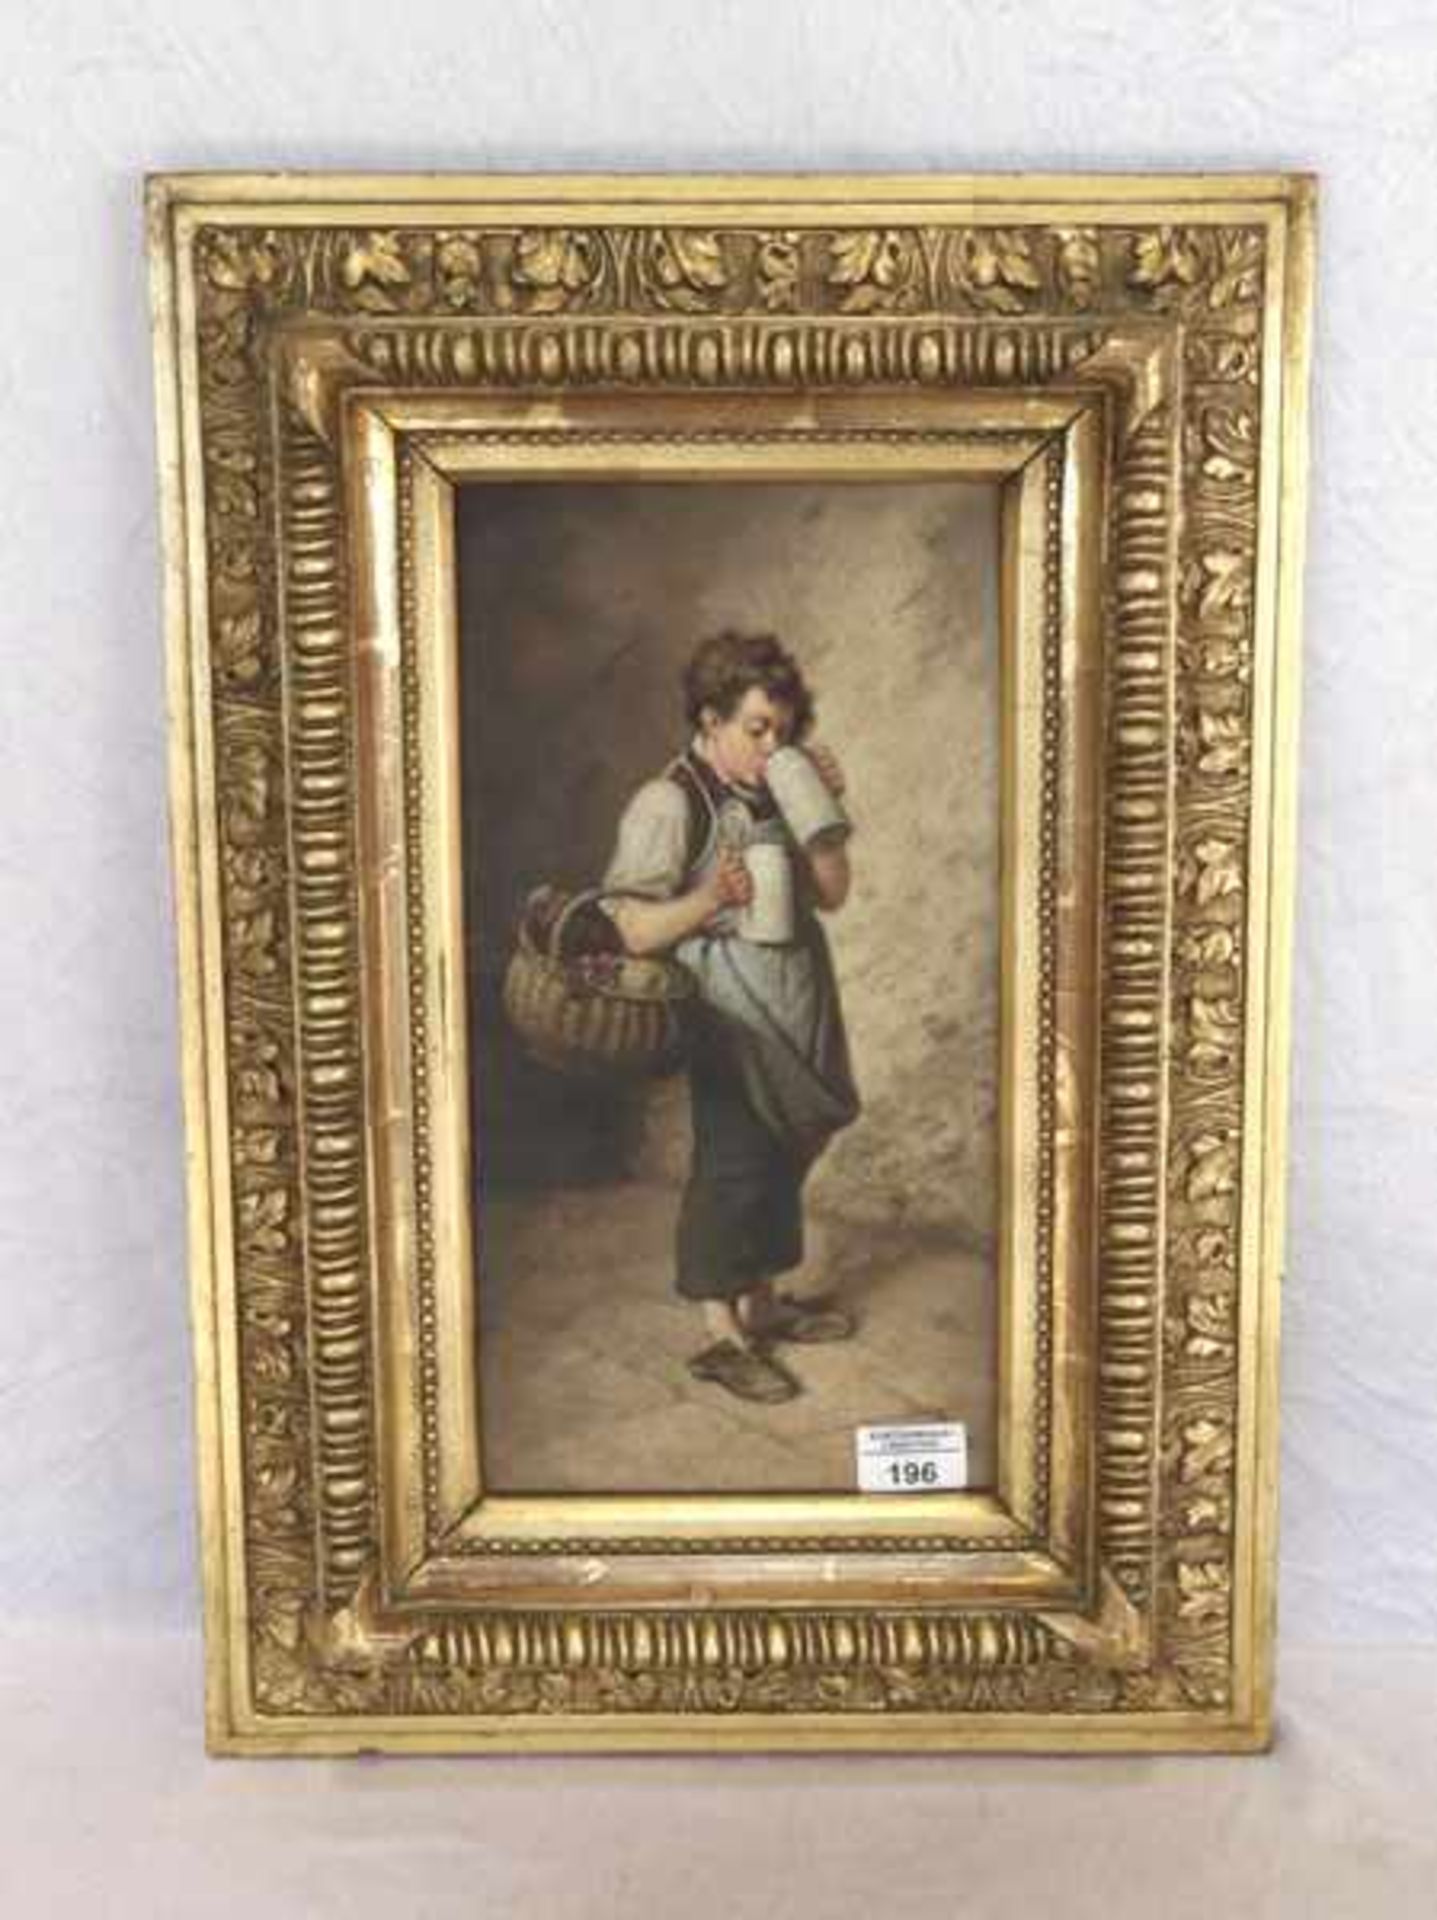 Gemälde ÖL/LW 'Junge bei Bierprobe', schön gerahmt, Rahmen bestossen, incl. Rahmen 56 cm x 39 cm